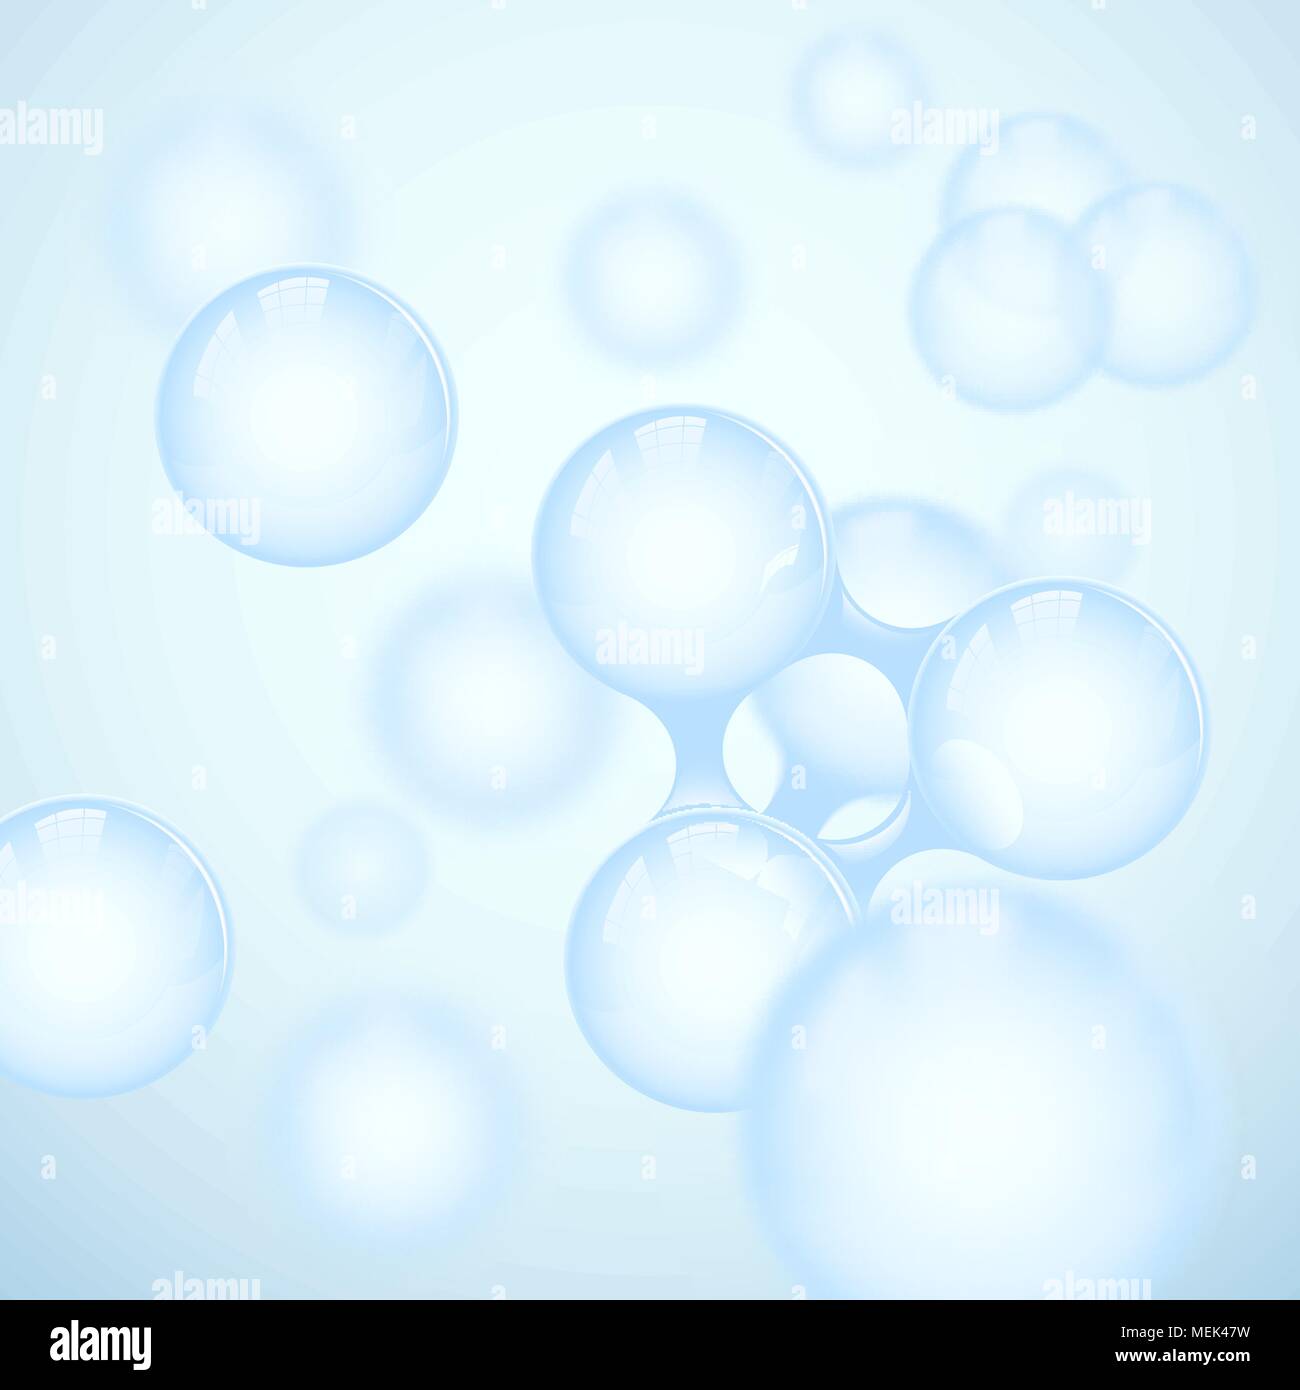 Vektor abstrakte Hellblau glänzend Molekül Design. Atome Abbildung. Medizinischer Hintergrund für Wissenschaft Banner oder Flyer. Molekulare Struktur Stock Vektor